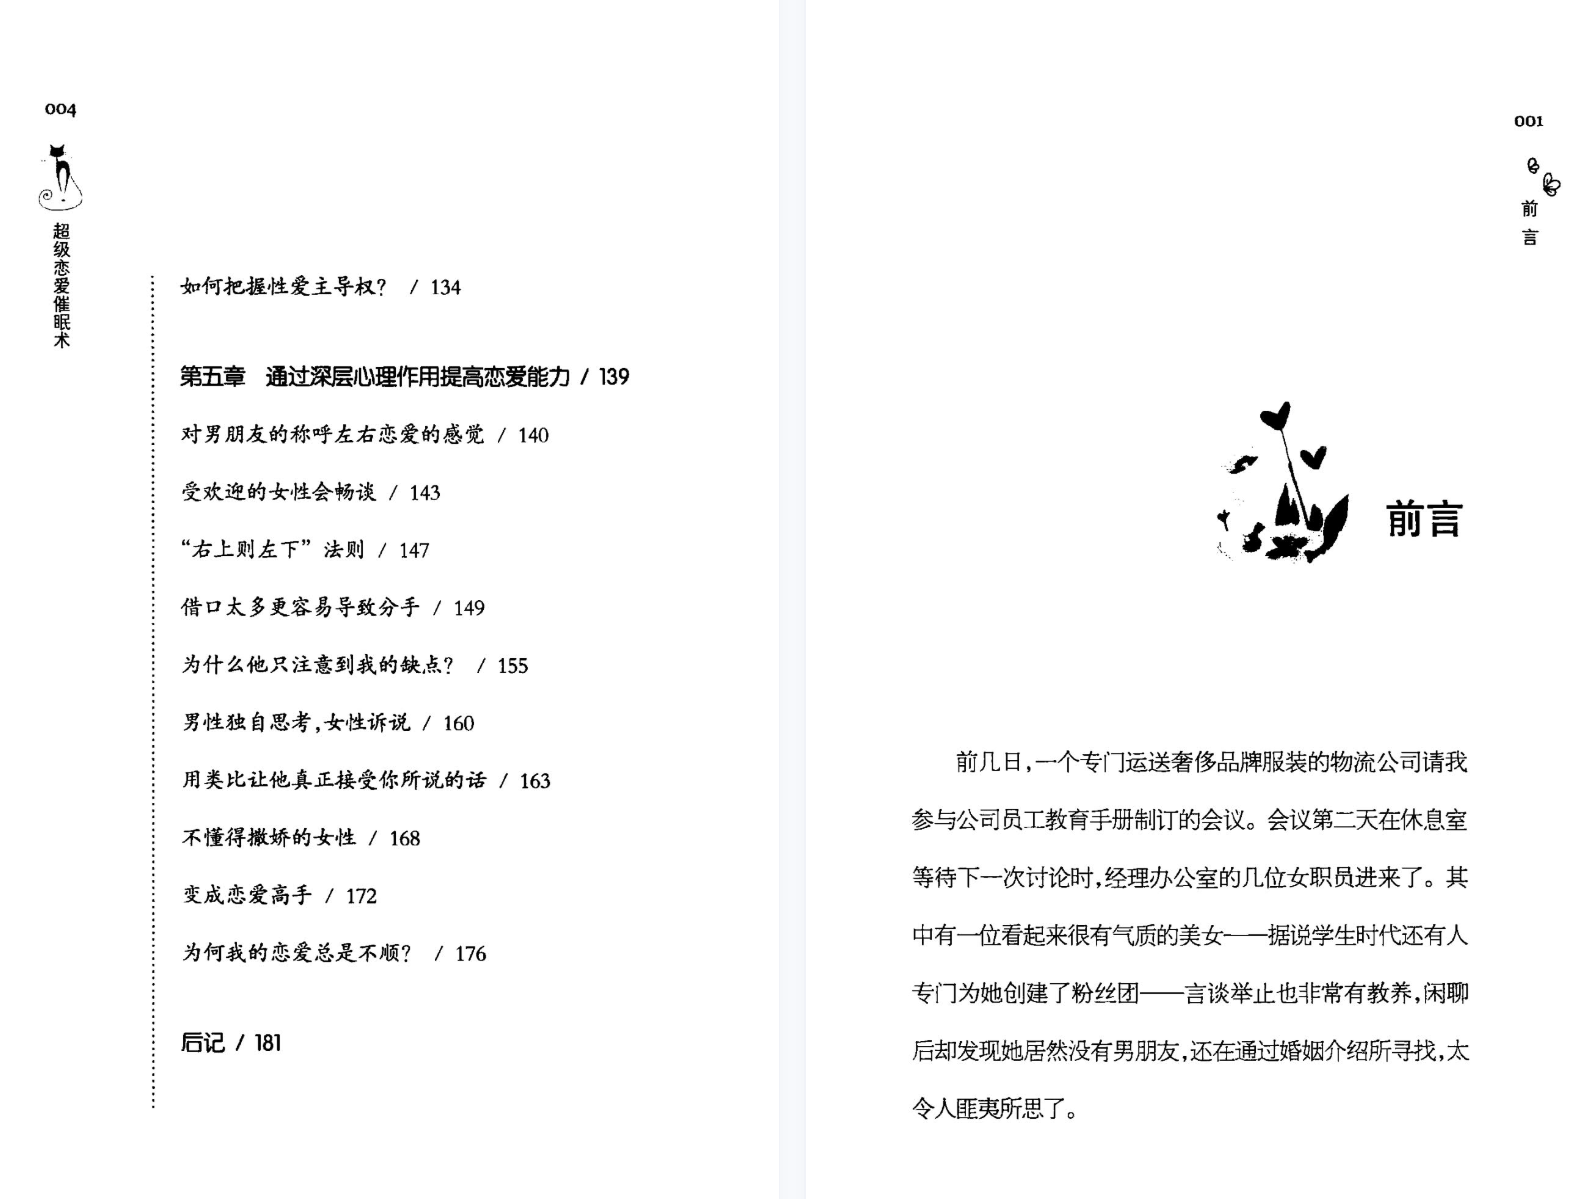 超级恋爱催眠术「百度网盘下载」PDF 电子书插图3